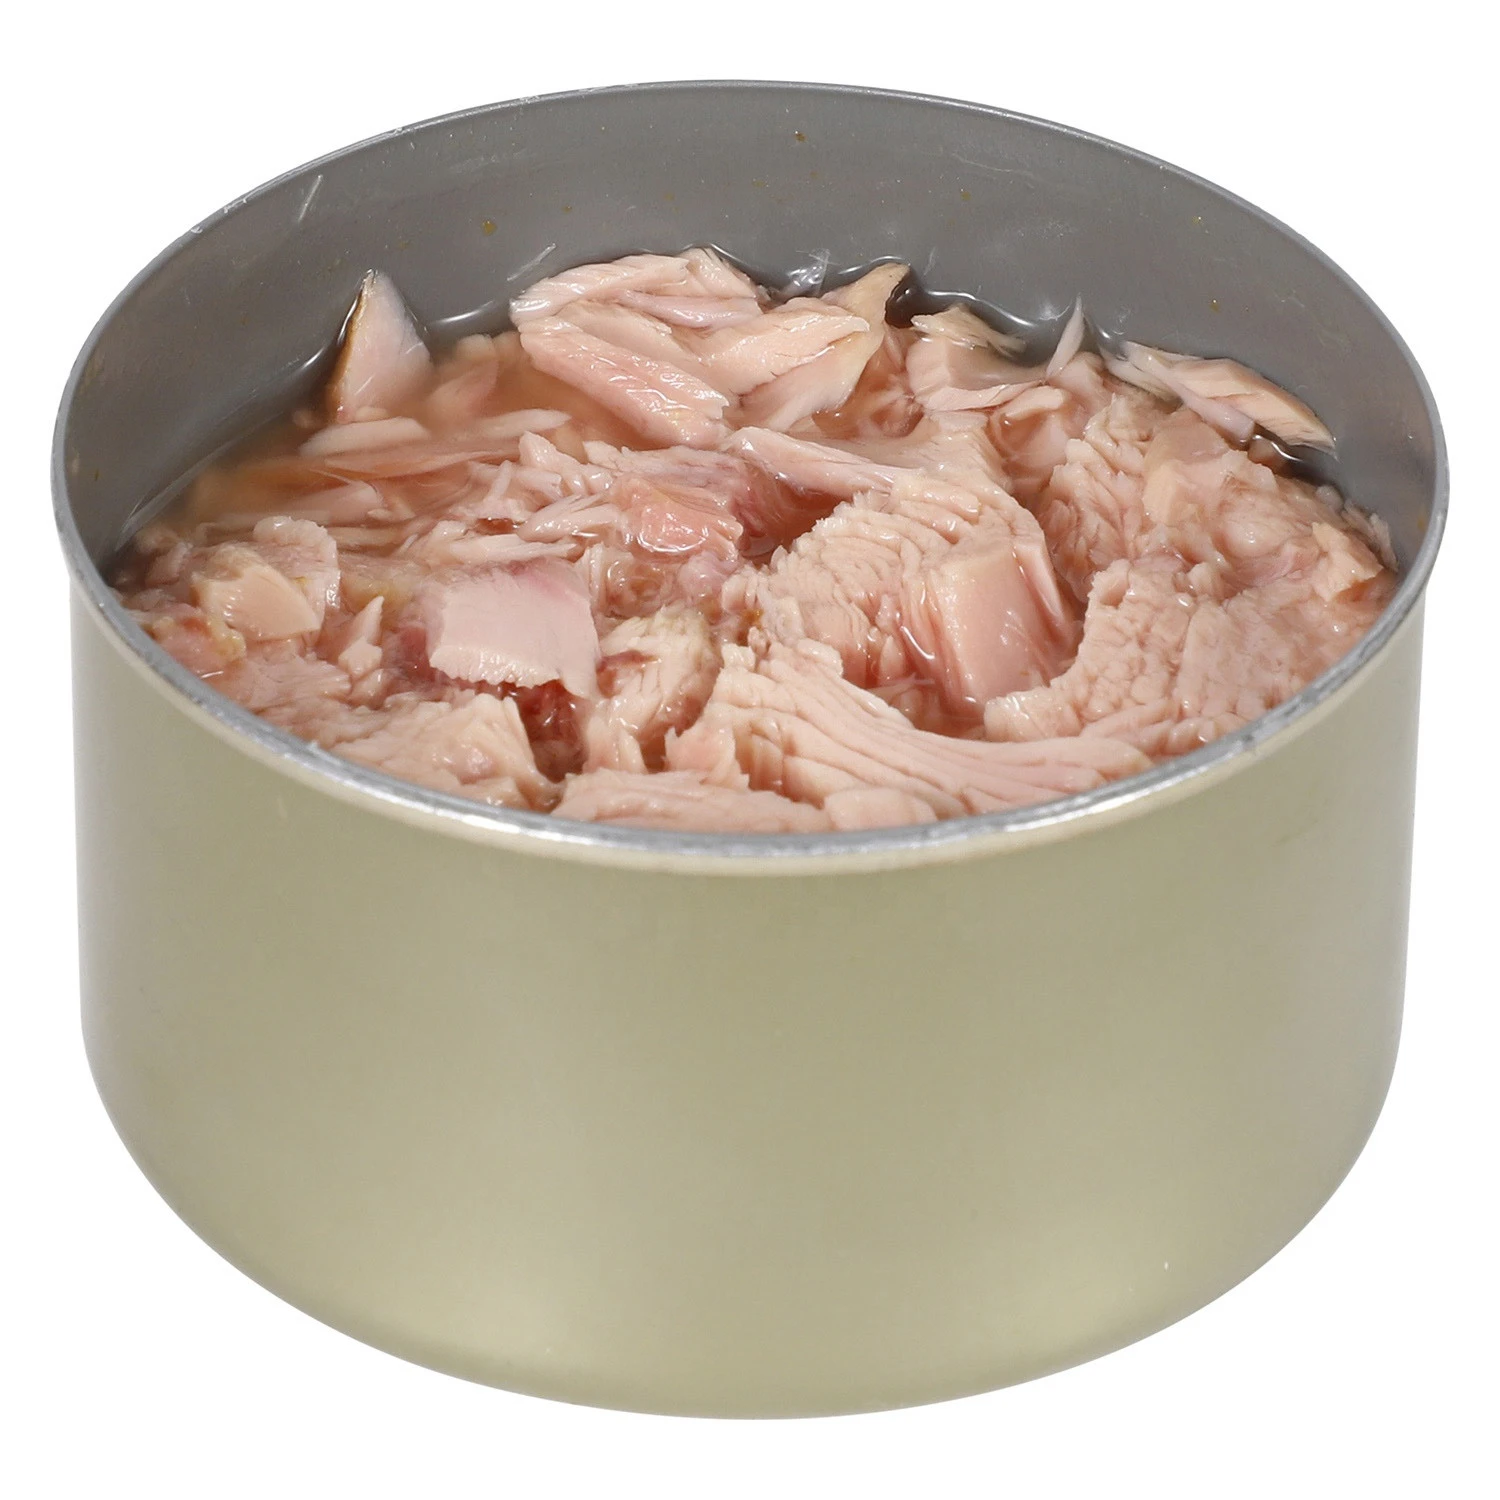 Canned skipjack tuna fish